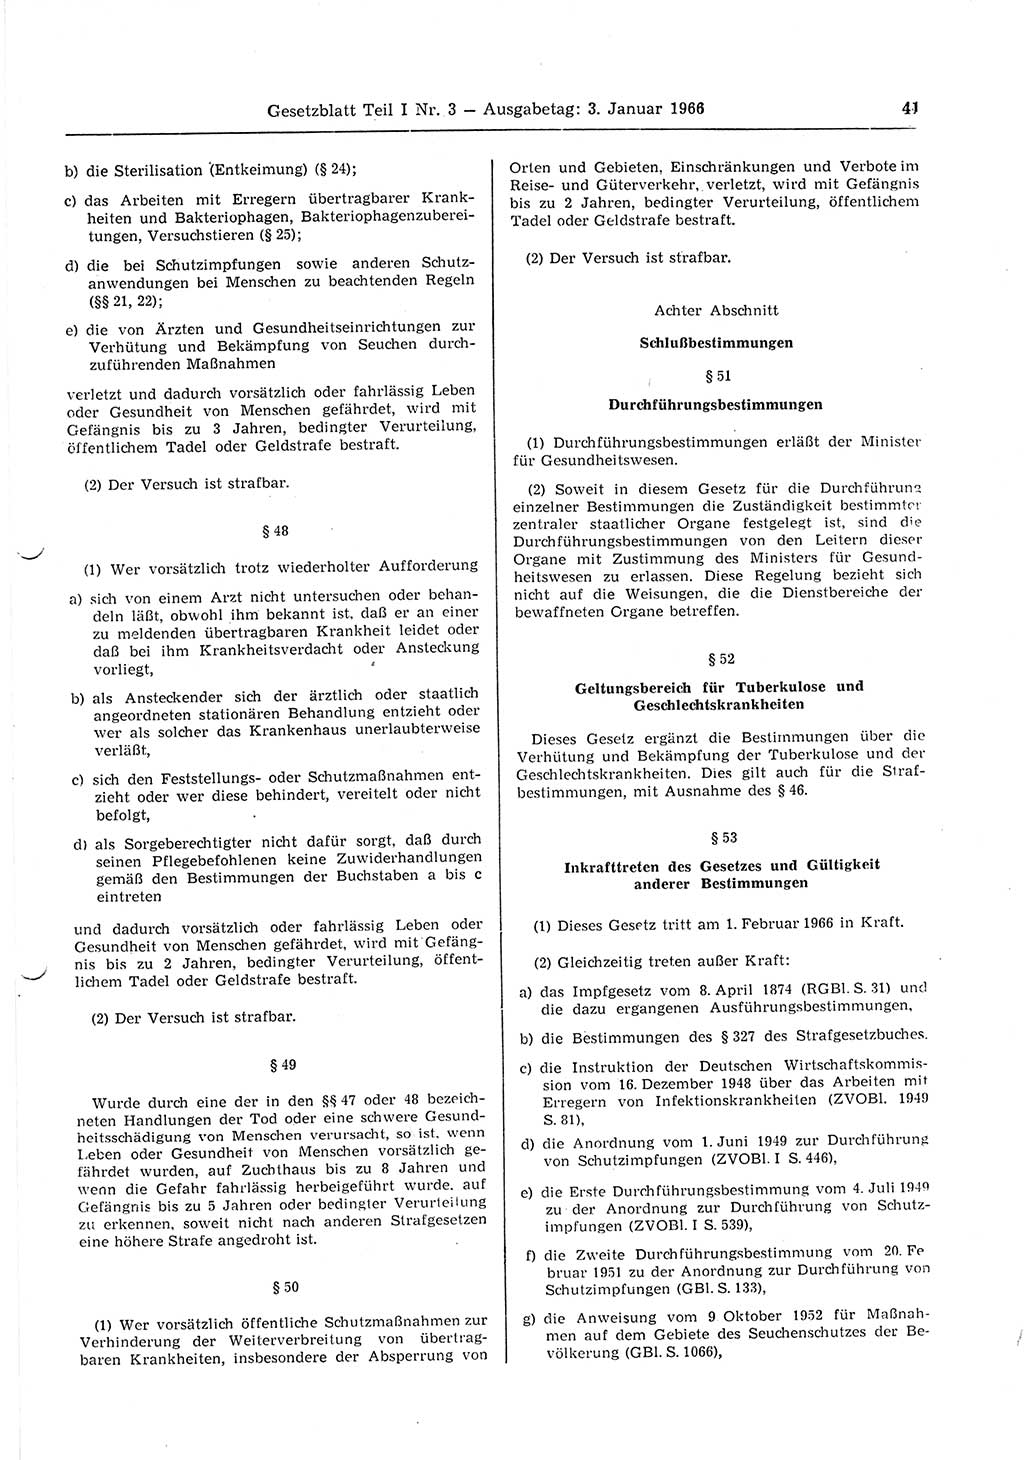 Gesetzblatt (GBl.) der Deutschen Demokratischen Republik (DDR) Teil Ⅰ 1966, Seite 41 (GBl. DDR Ⅰ 1966, S. 41)